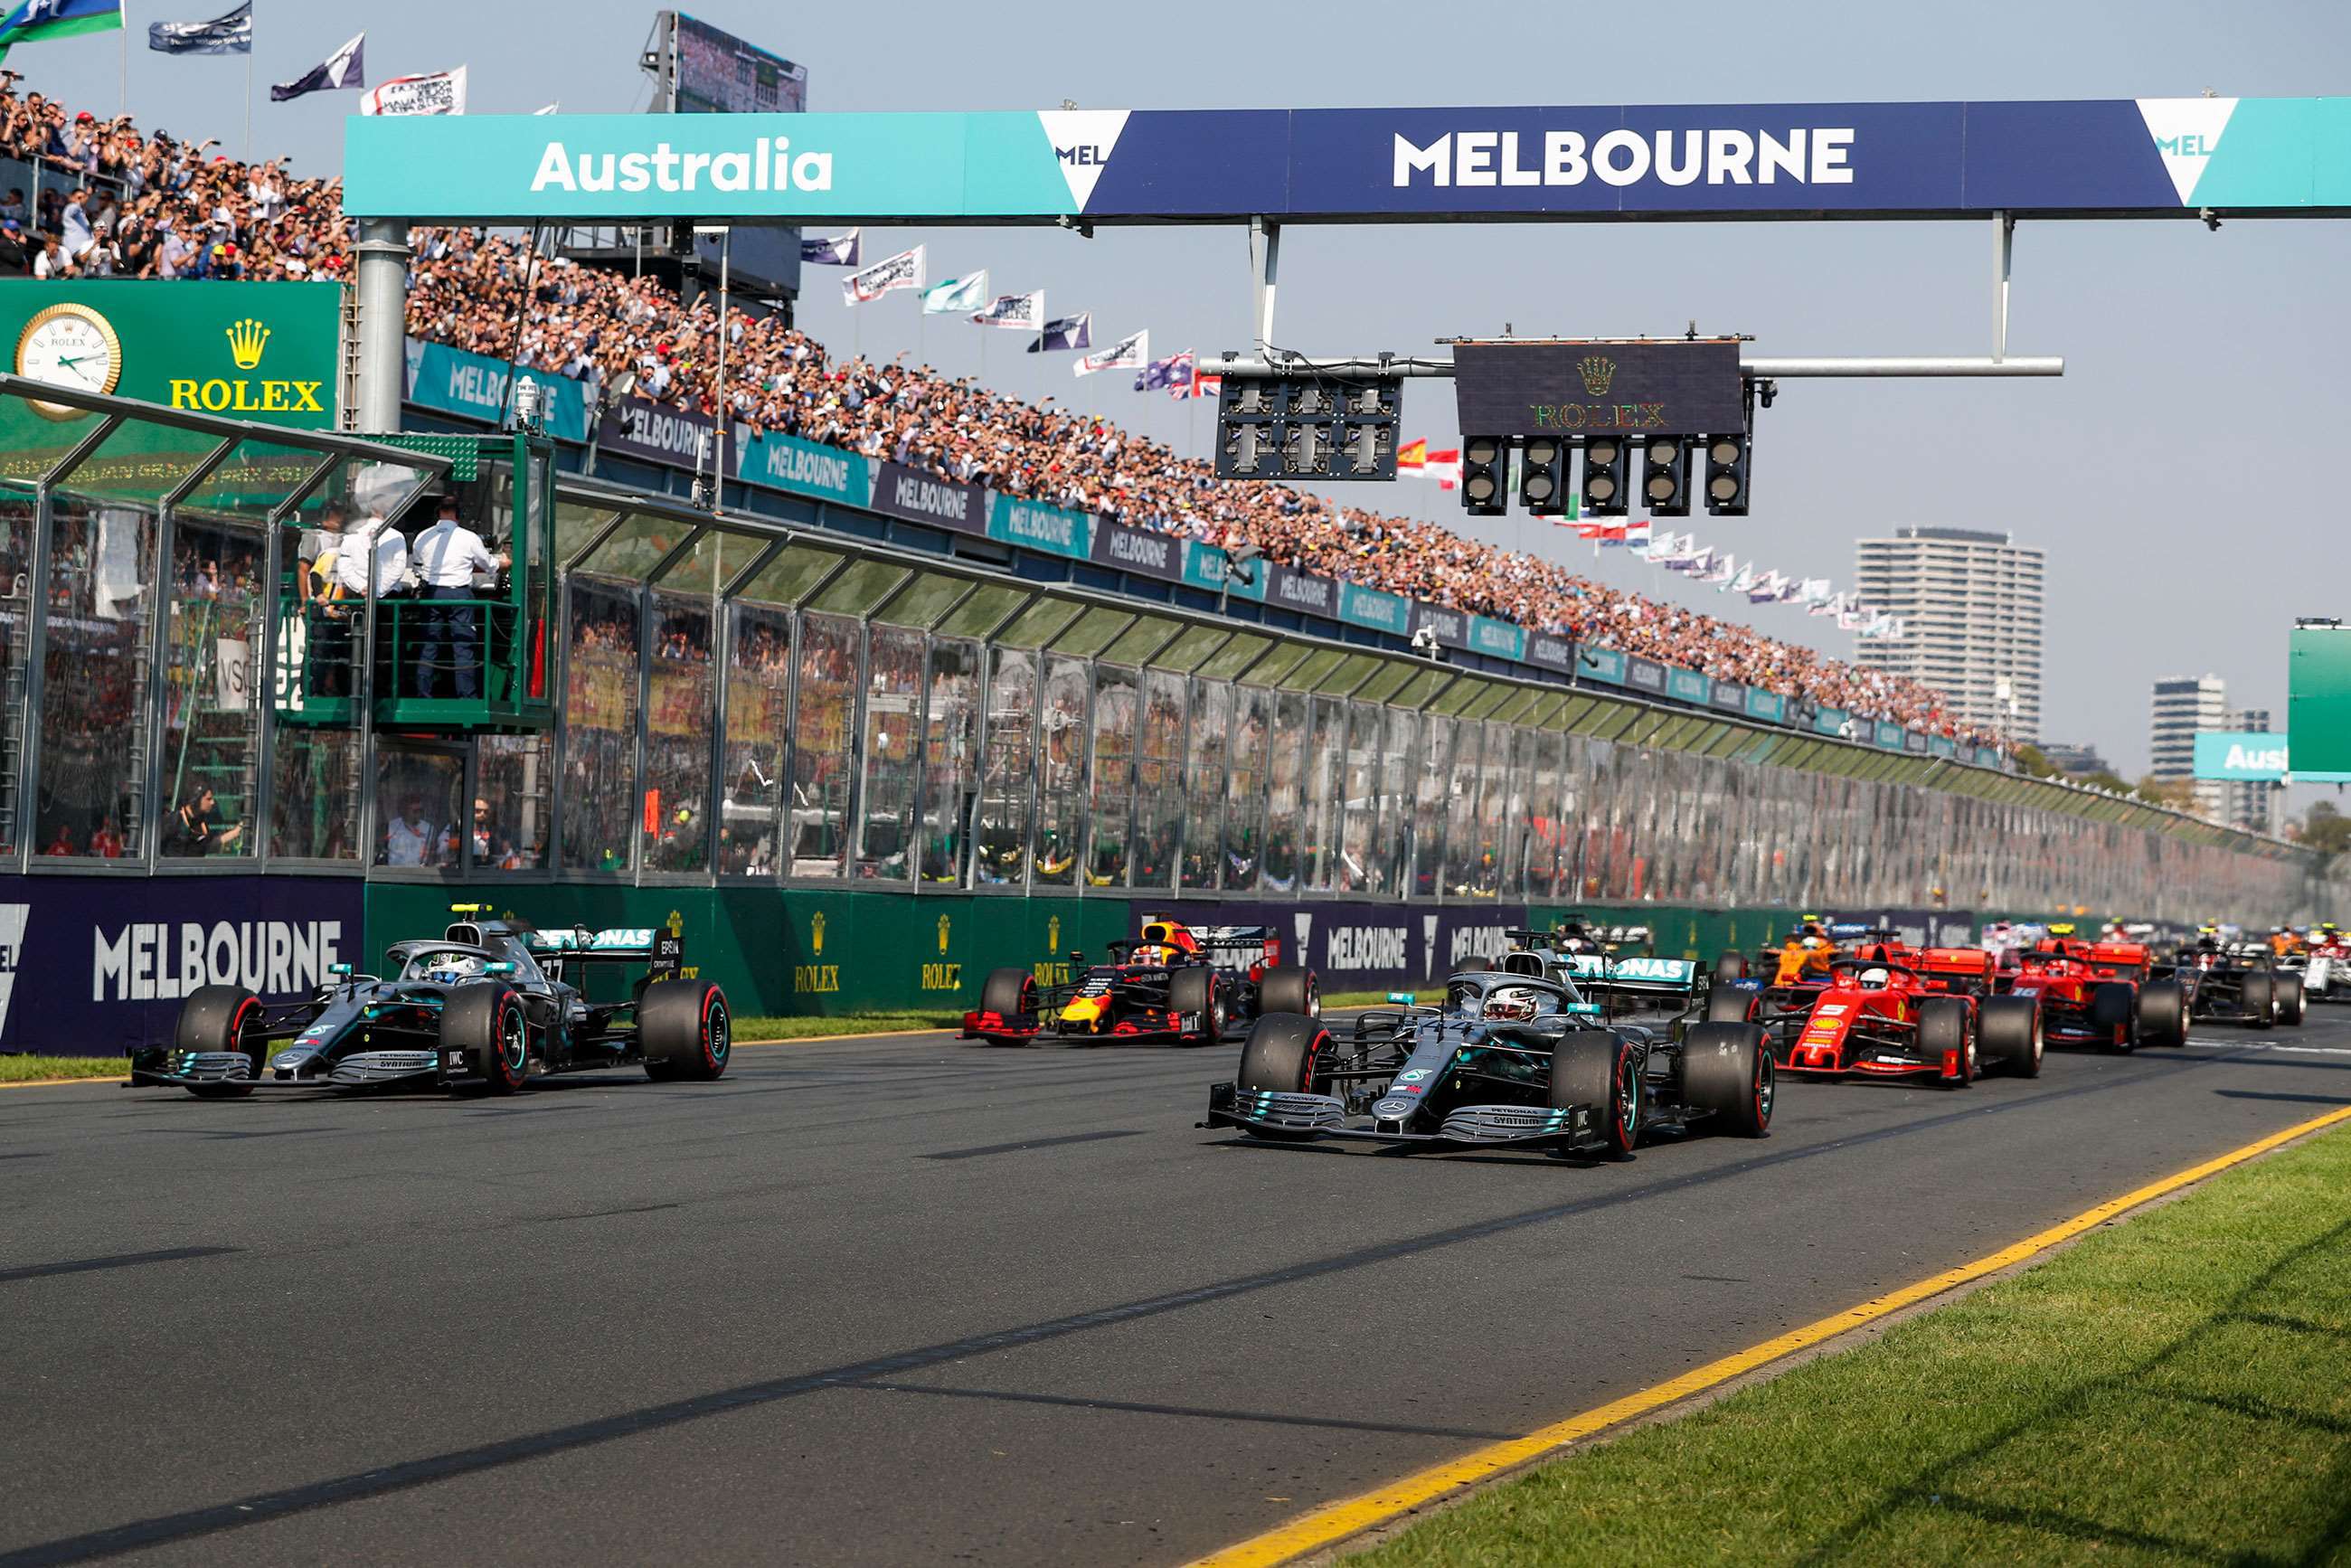 motorsport-2020-dates-2-australian-gran-prix-steven-tee-motorsport-images-goodwood-05012020.jpg